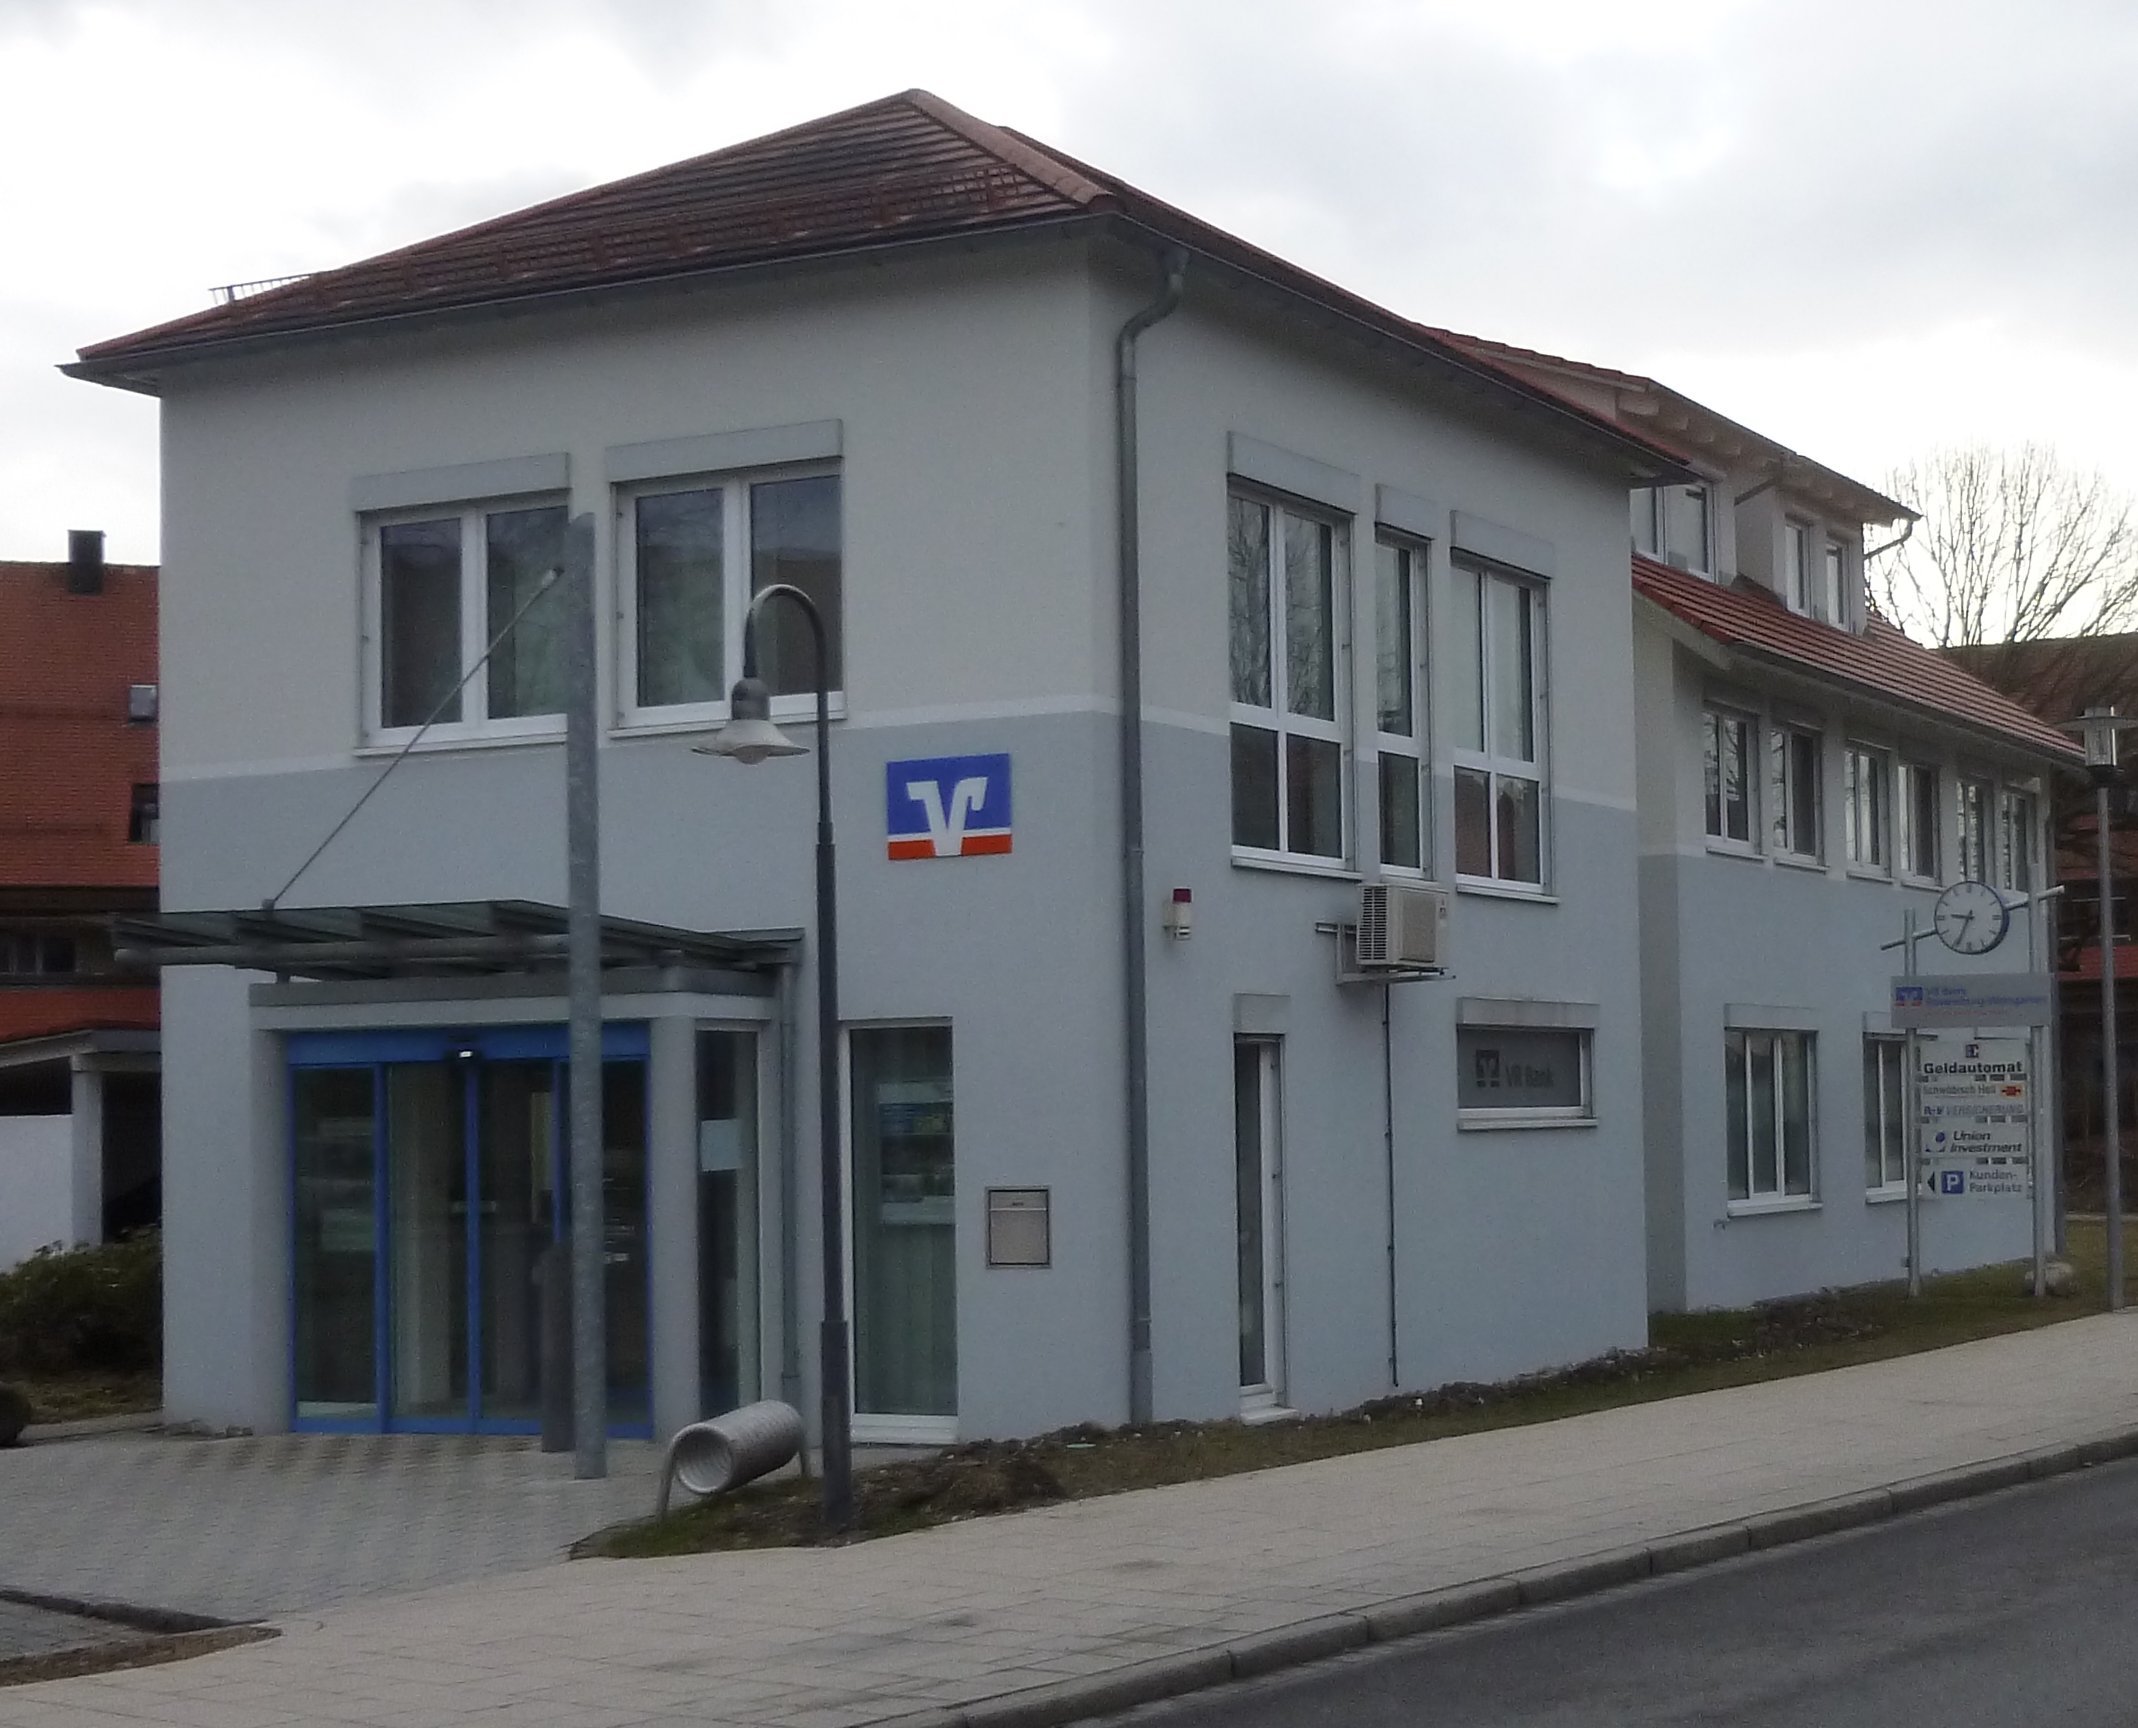  Verwaltungs- und VR-Bankgebäude in der Ravensburger Straße 12 